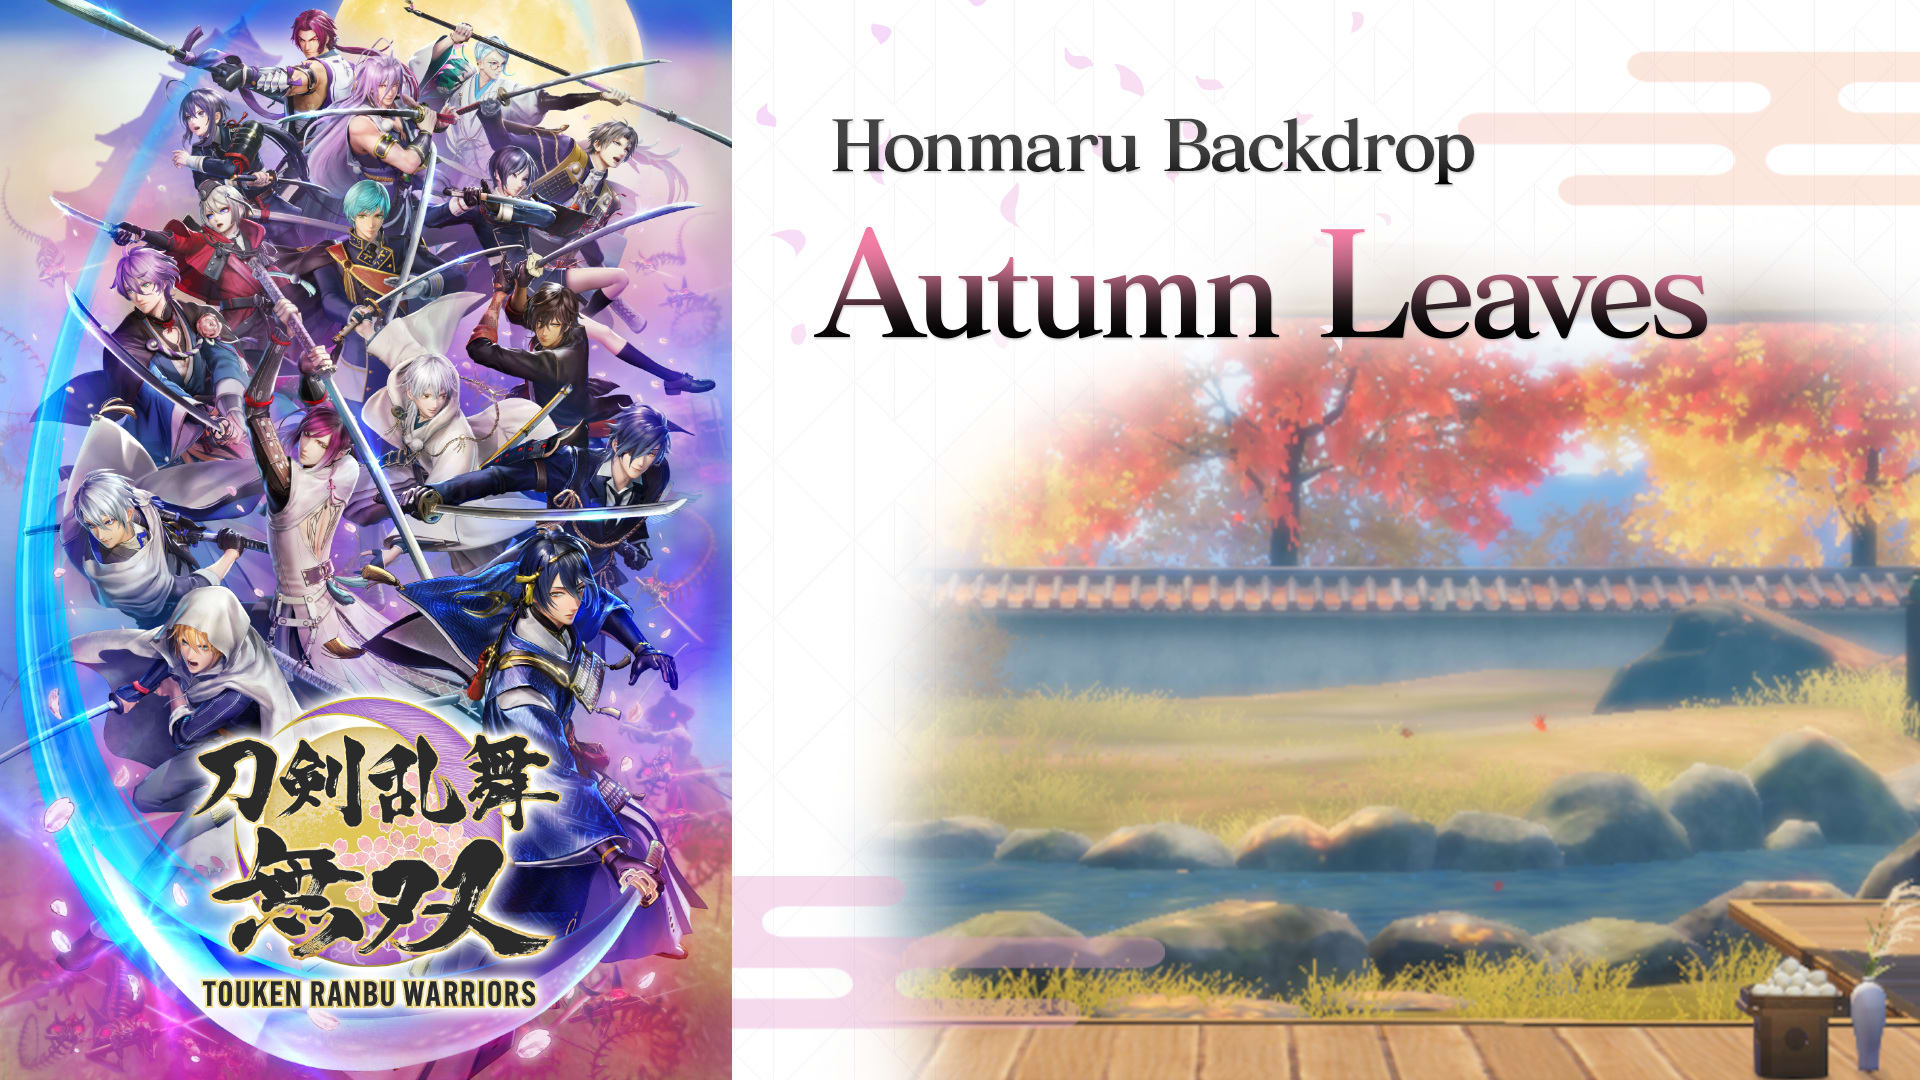 Honmaru Backdrop "Autumn Leaves"